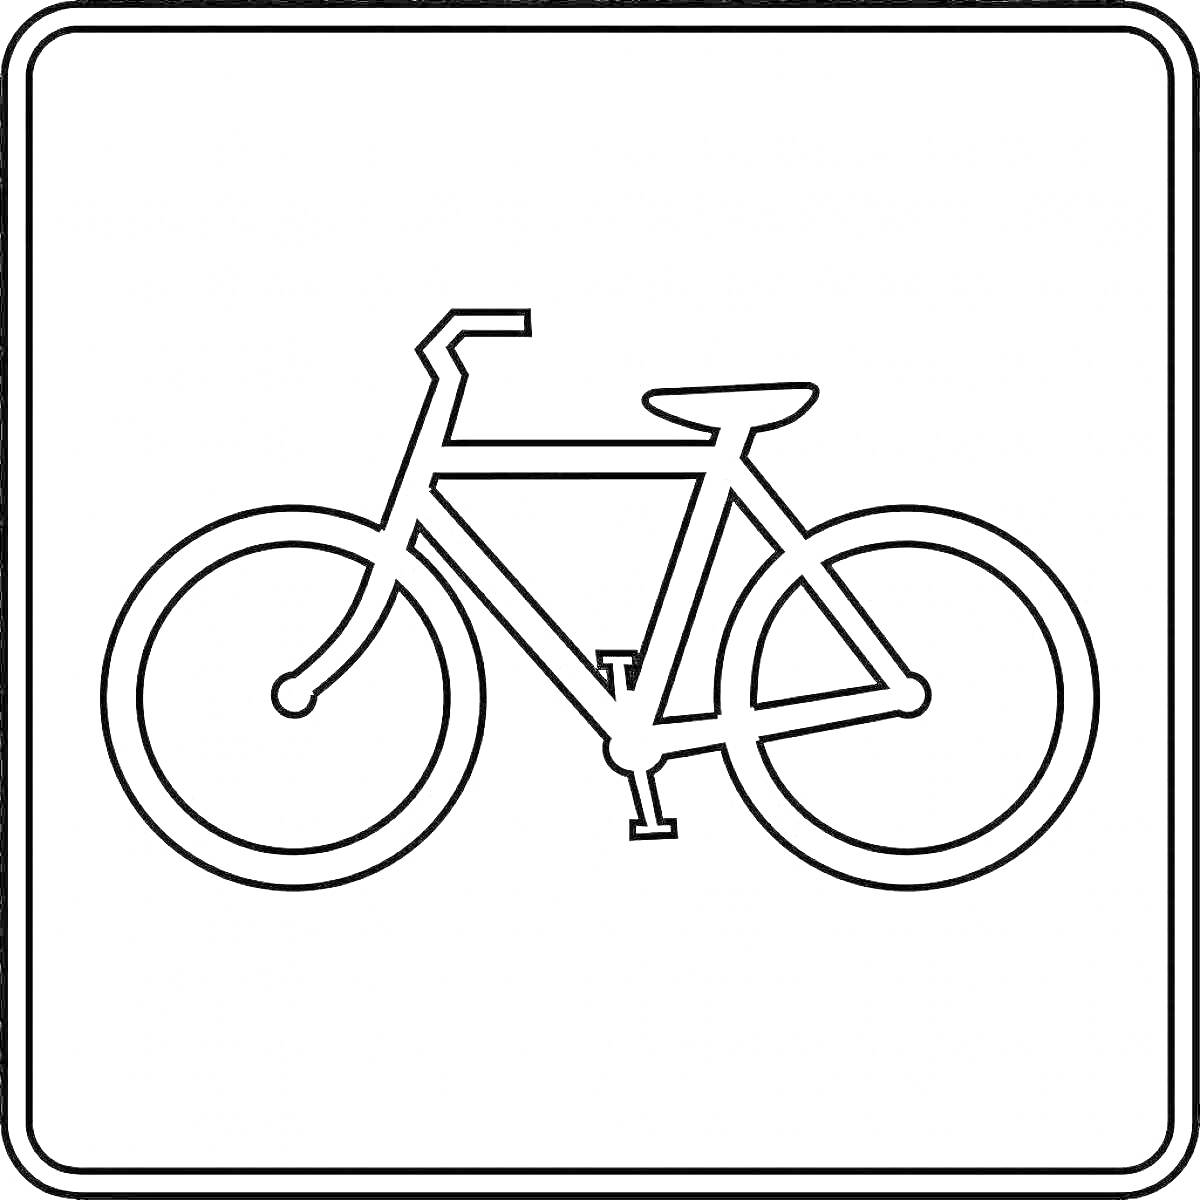 На раскраске изображено: Знак, Велосипед, Дорожка, Безопасность, Транспорт, Инфраструктура, Для детей